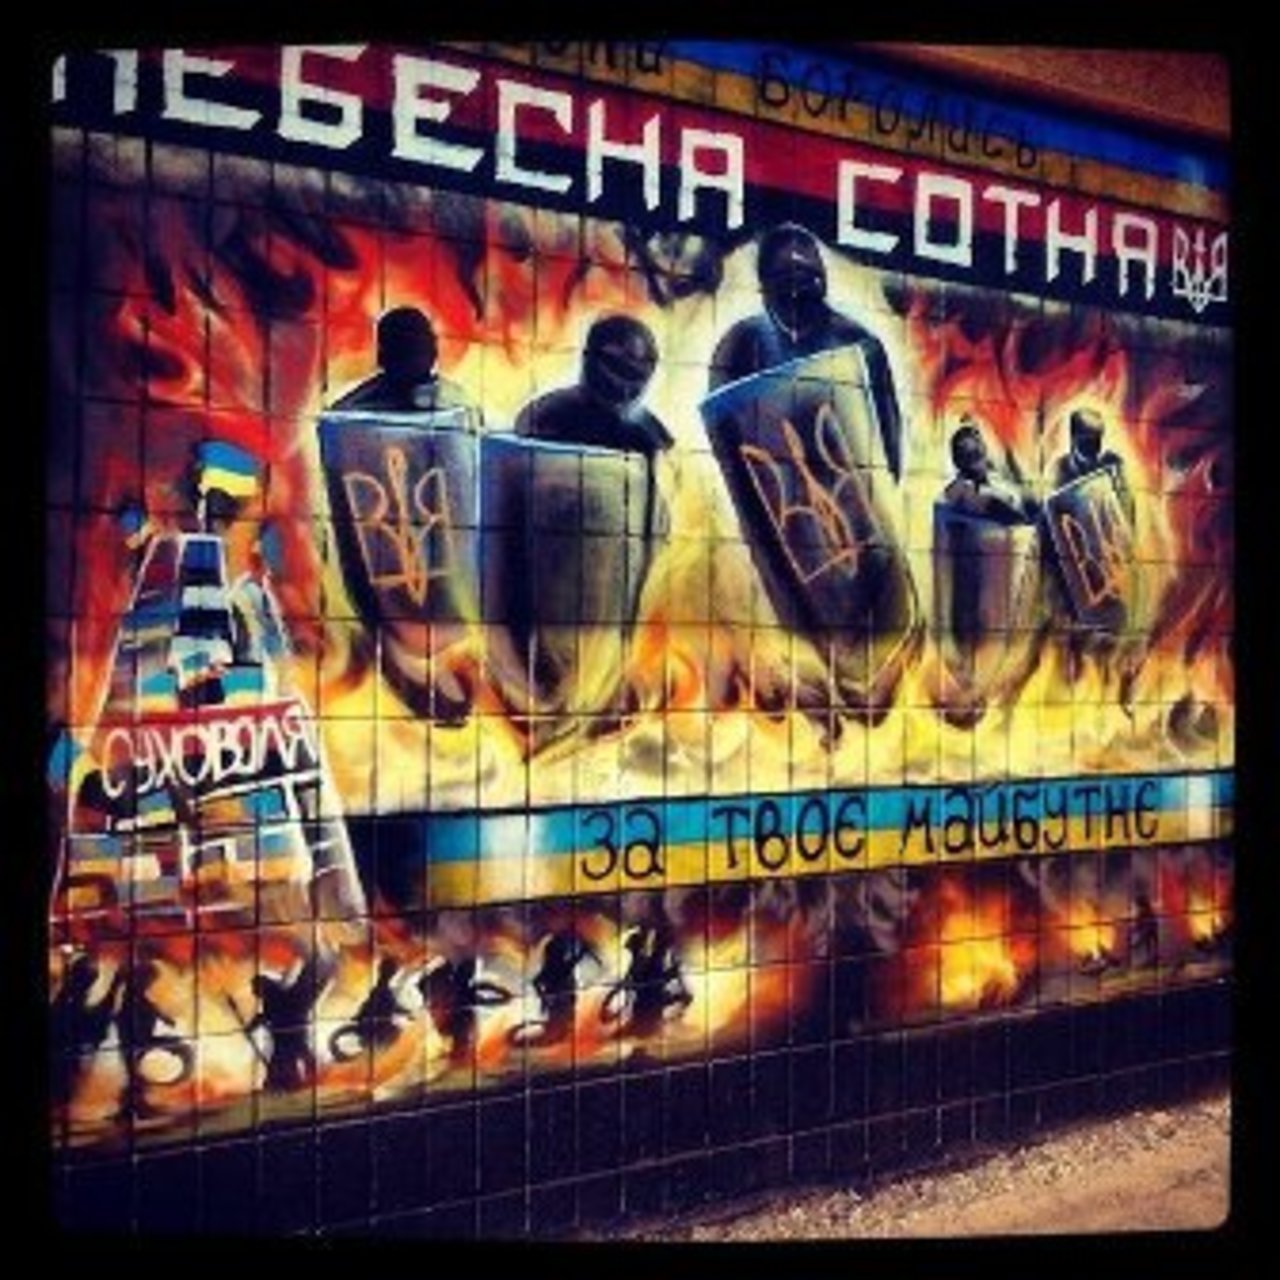 RT @kasimirova: #Ukraine, #graffiti  in memory of the heroes of #Maidan   
#streetart #urbanart #murals https://t.co/tJyMmnT8To